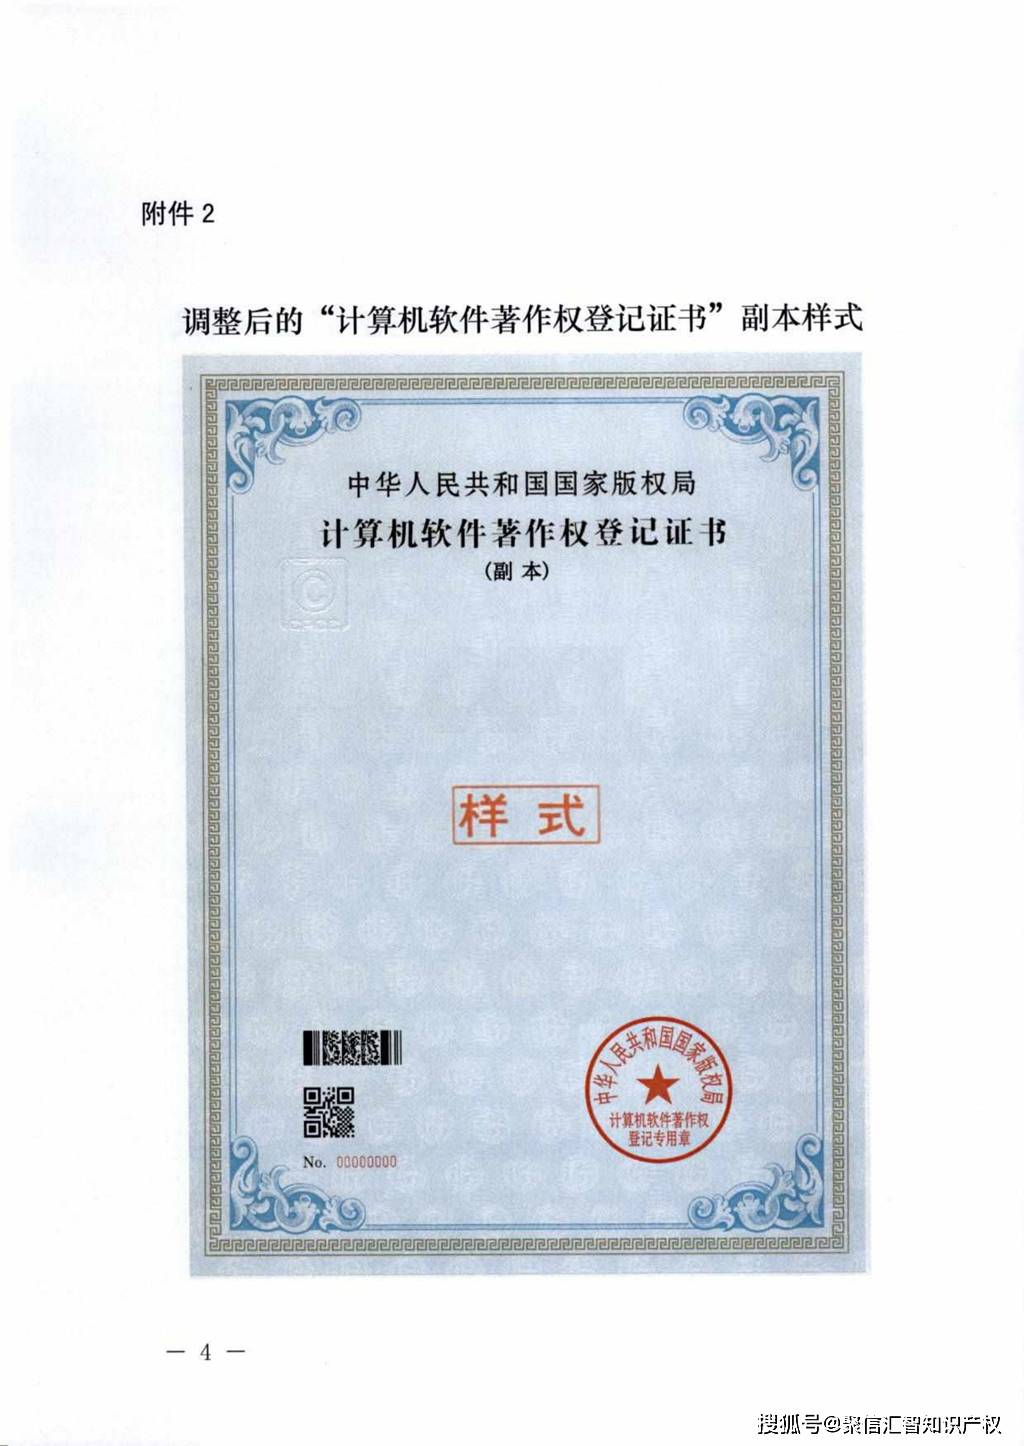 中国版权保护中心关于调整计算机软件著作权登记证书打印方式和内容的